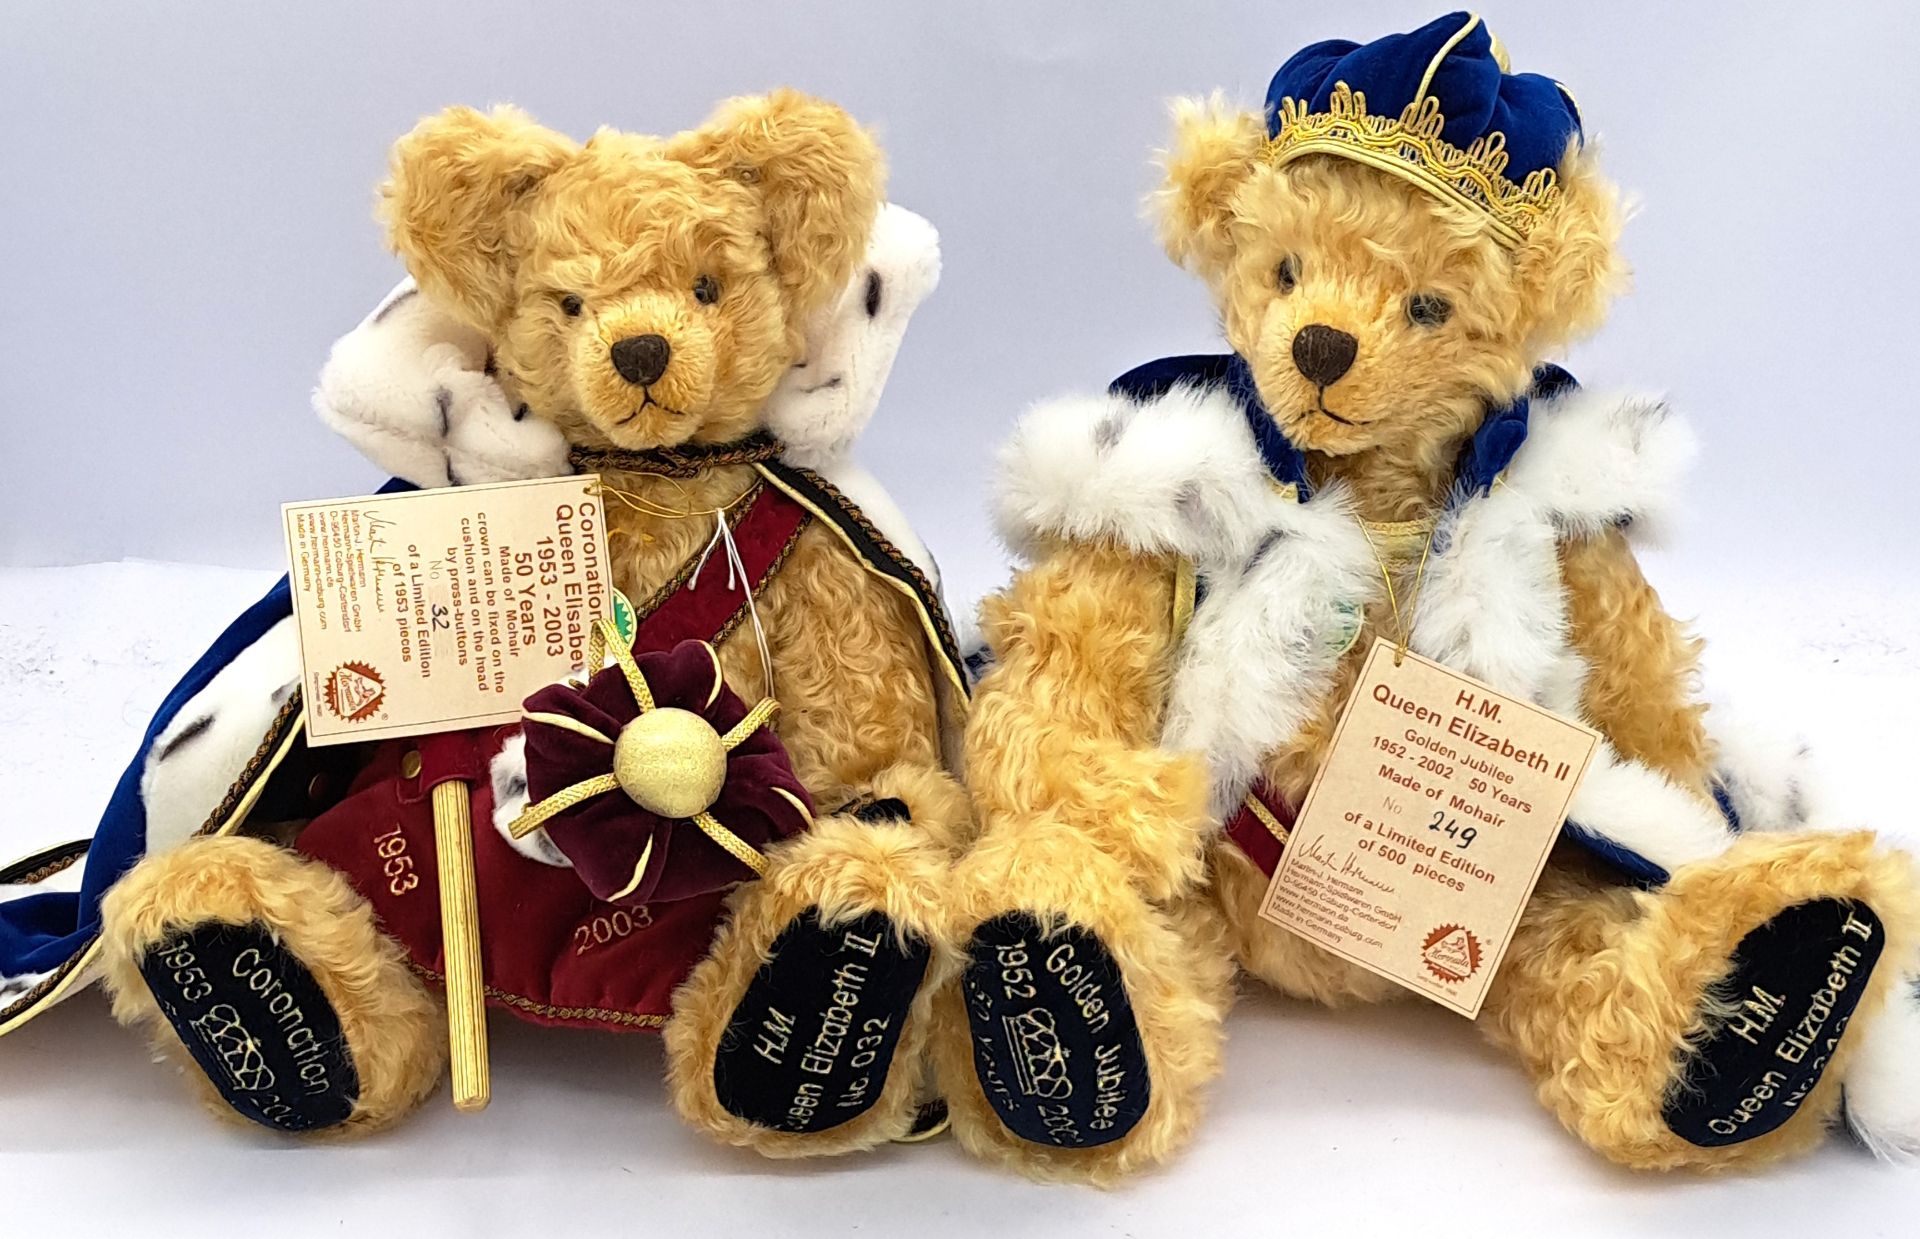 Hermann-Spielwaren pair of Queen Elizabeth II teddy bears